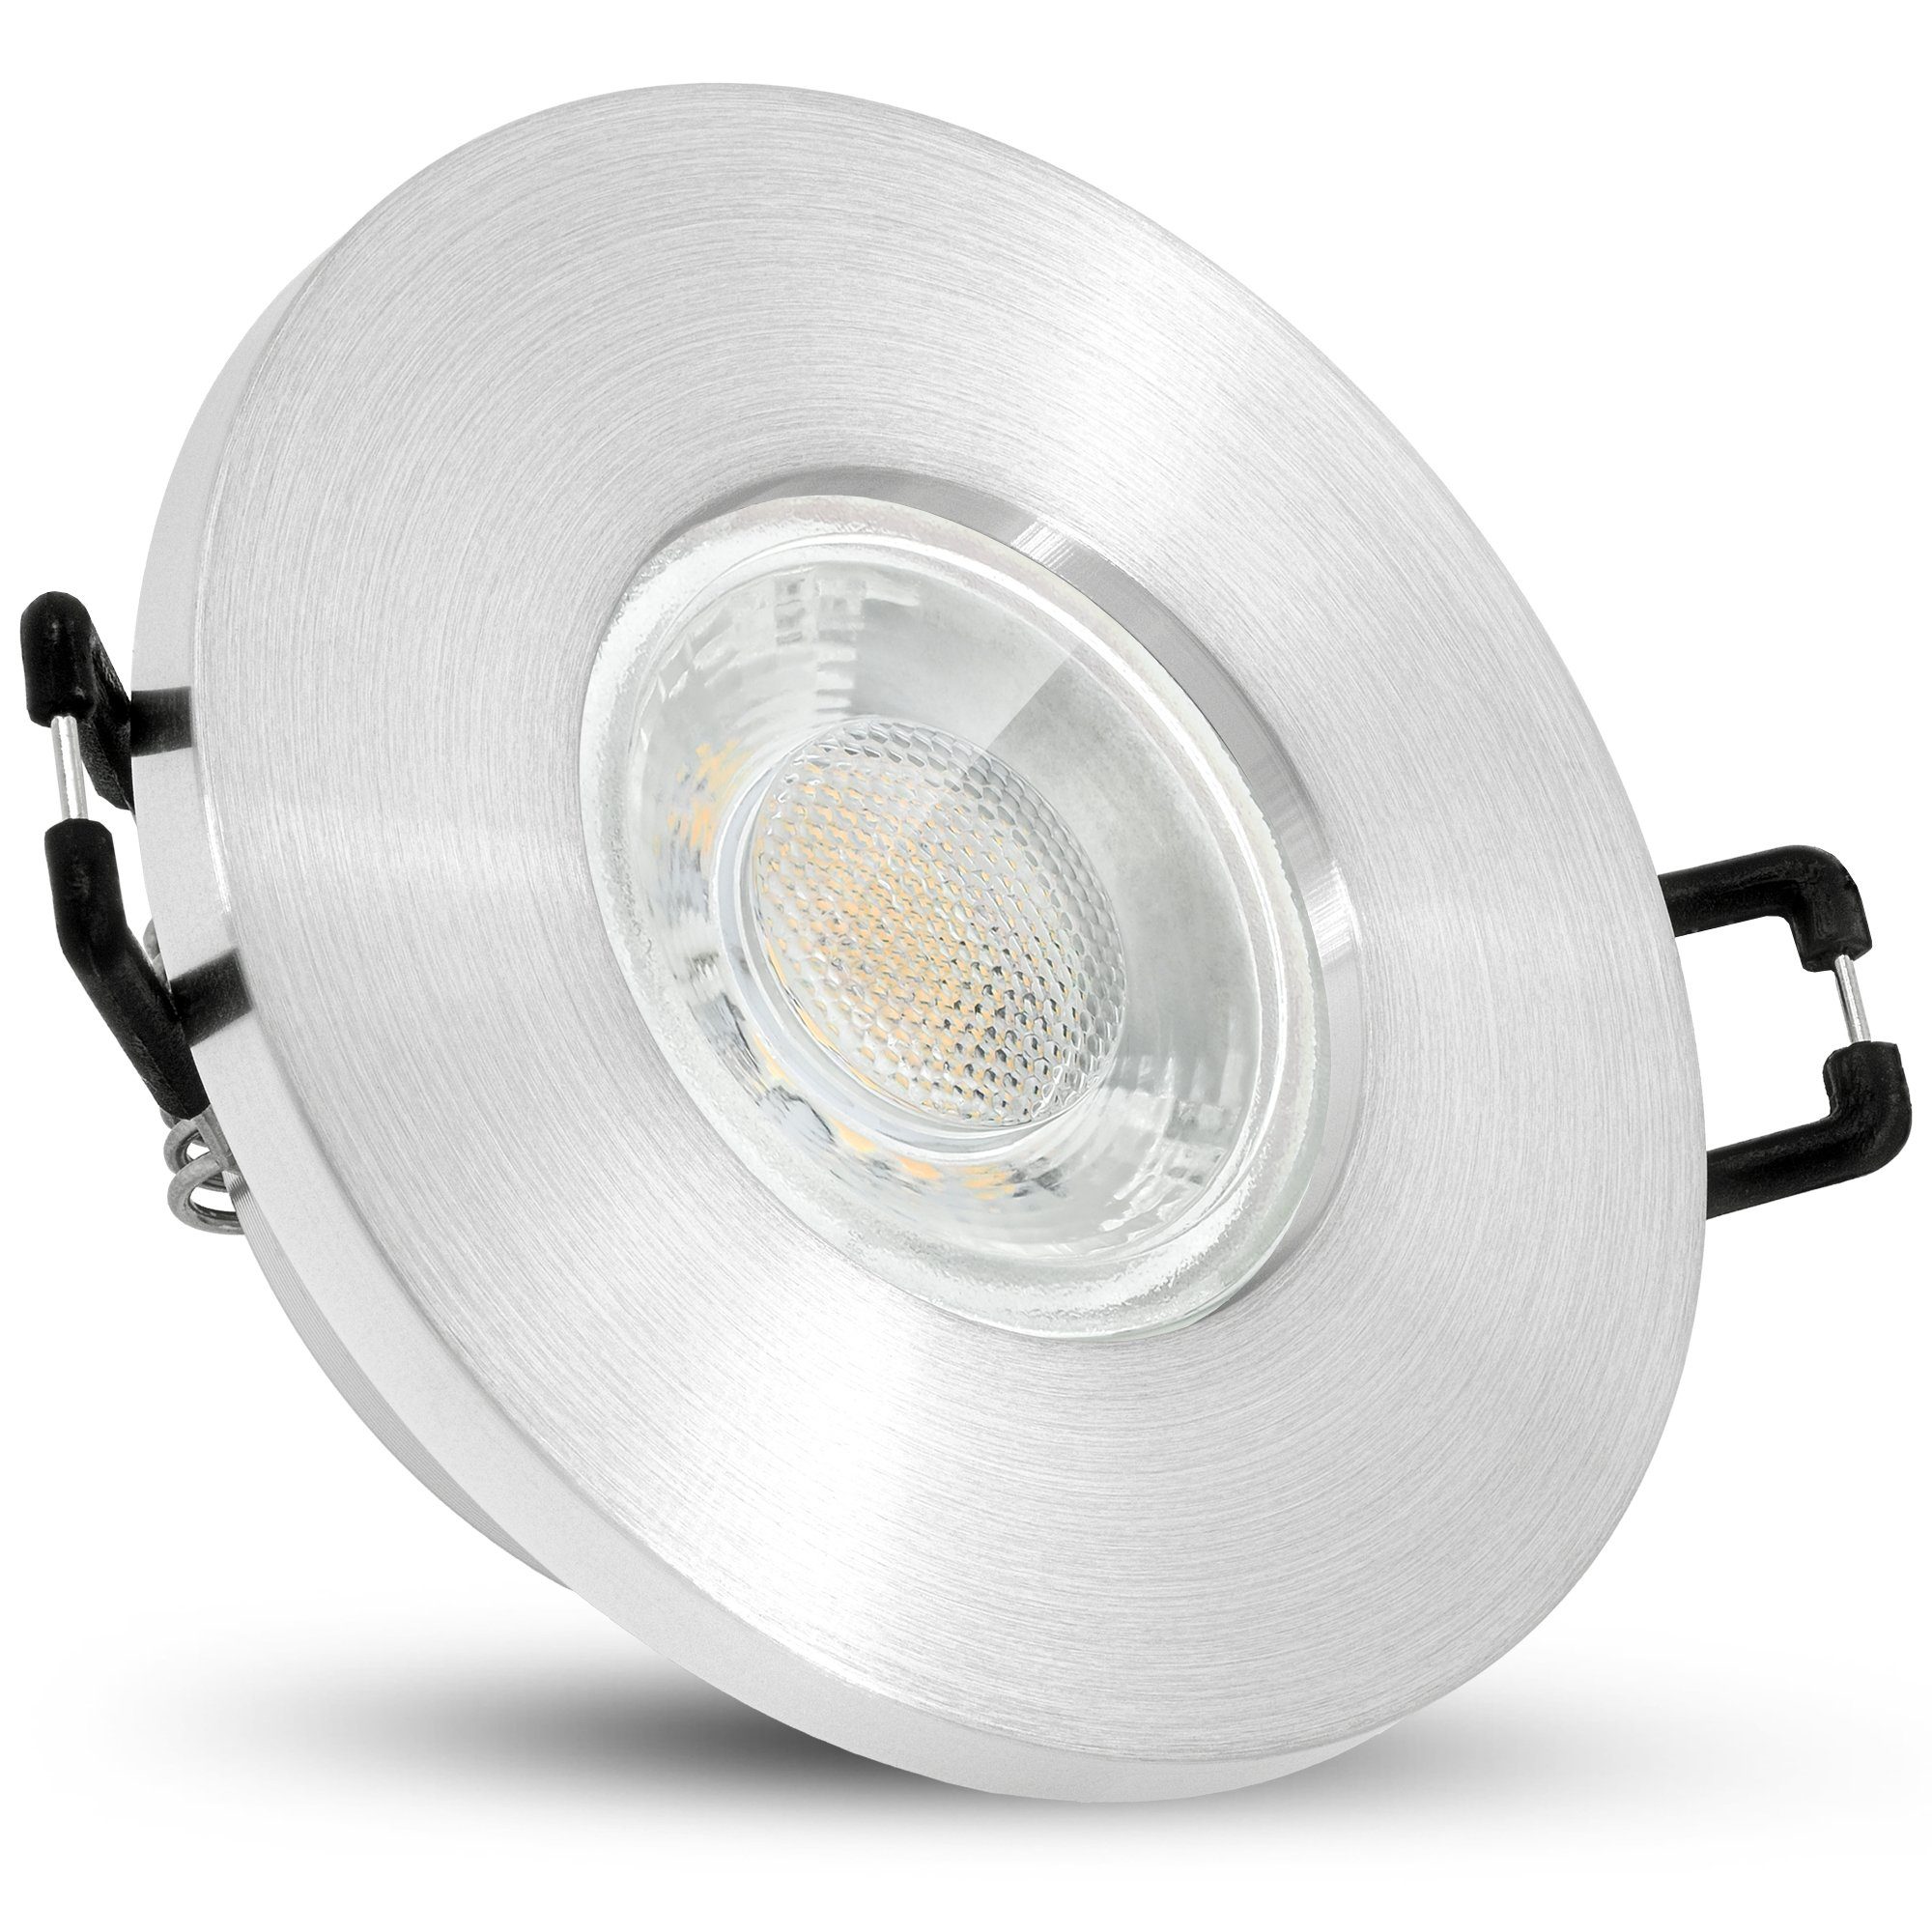 linovum LED Einbaustrahler 10er Set inklusive Leuchtmittel inklusive, Einbaustrahler LED GU10 neutralweiss 6W Leuchtmittel 230V, IP65